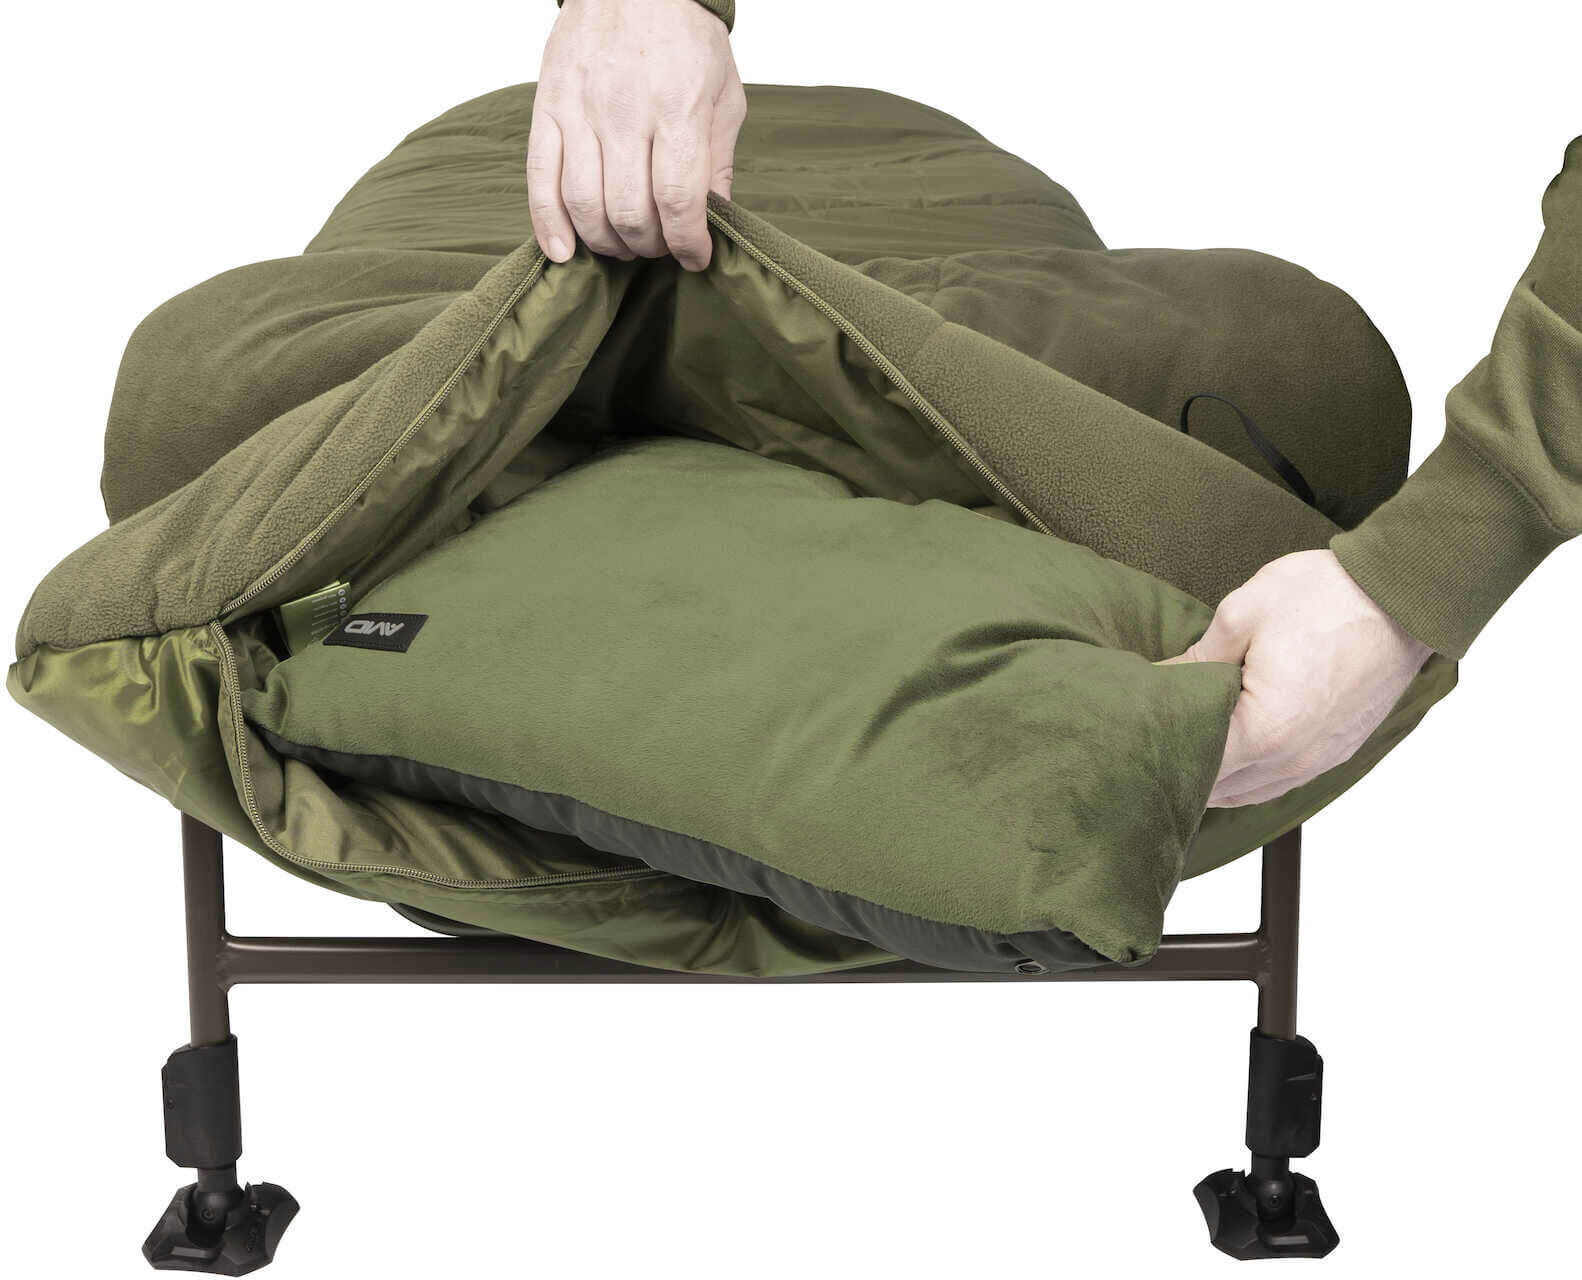 Der Avid Thermo Schlafsack wird mit einem herausnehmbaren Kopfkissen geliefert.